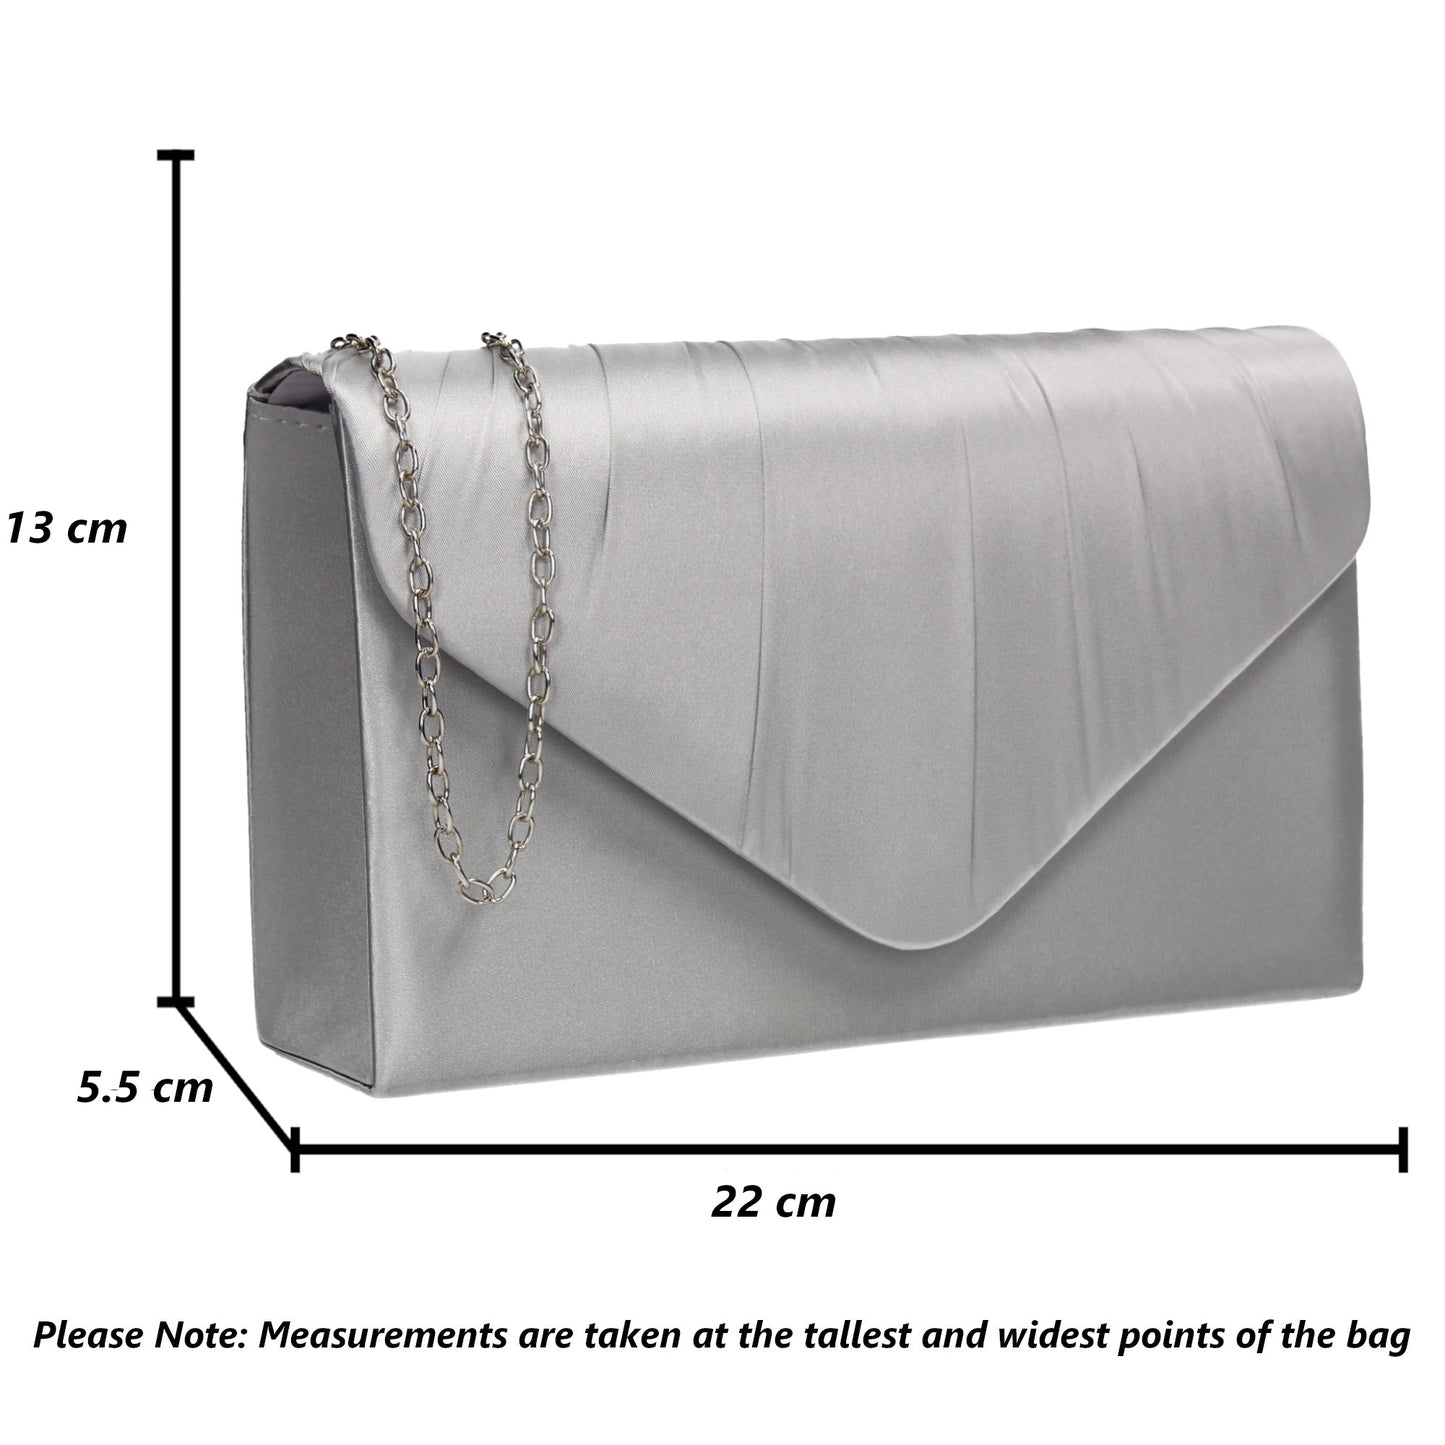 Chantel Beautiful Satin Envelope Clutch Bag Silver